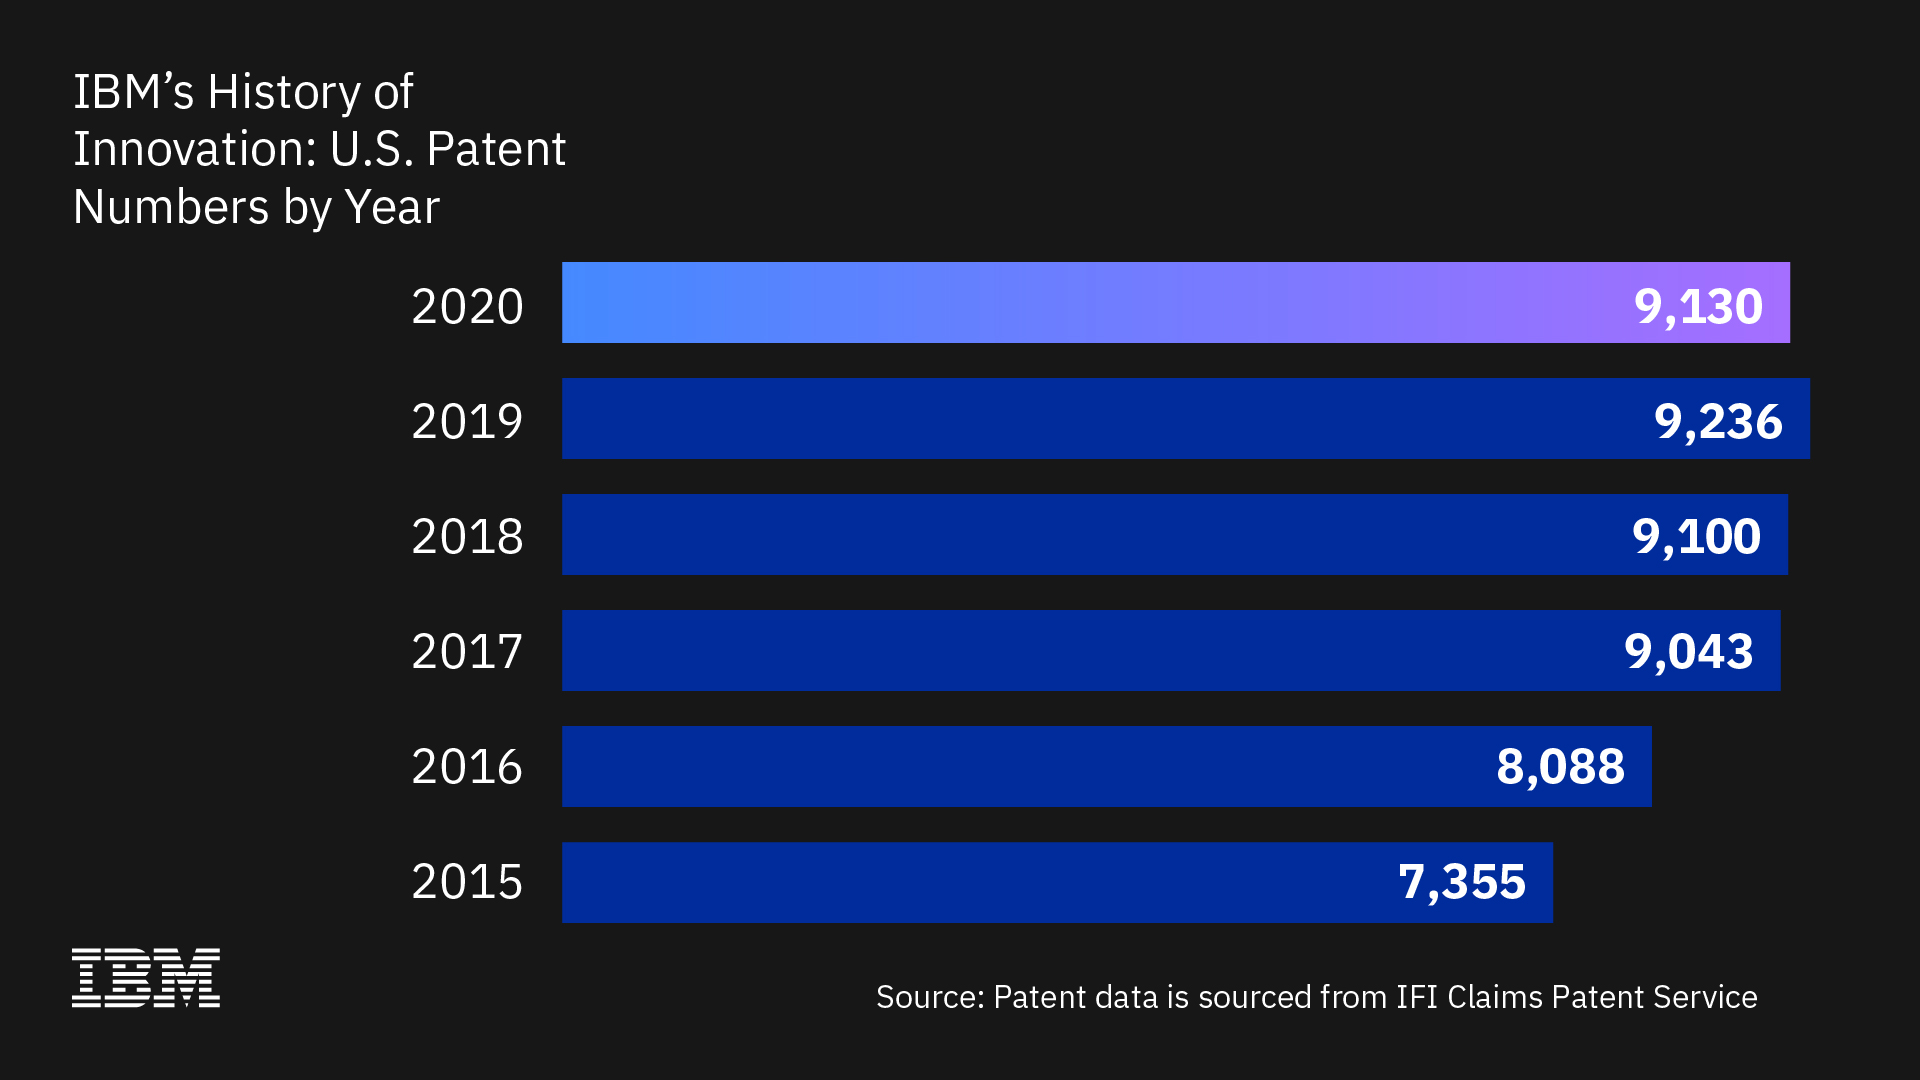 Los científicos e investigadores de IBM recibieron 9.130 patentes de Estados Unidos en 2020, más que cualquier otra empresa, marcando 28 años consecutivos de liderazgo de IBM en patentes.